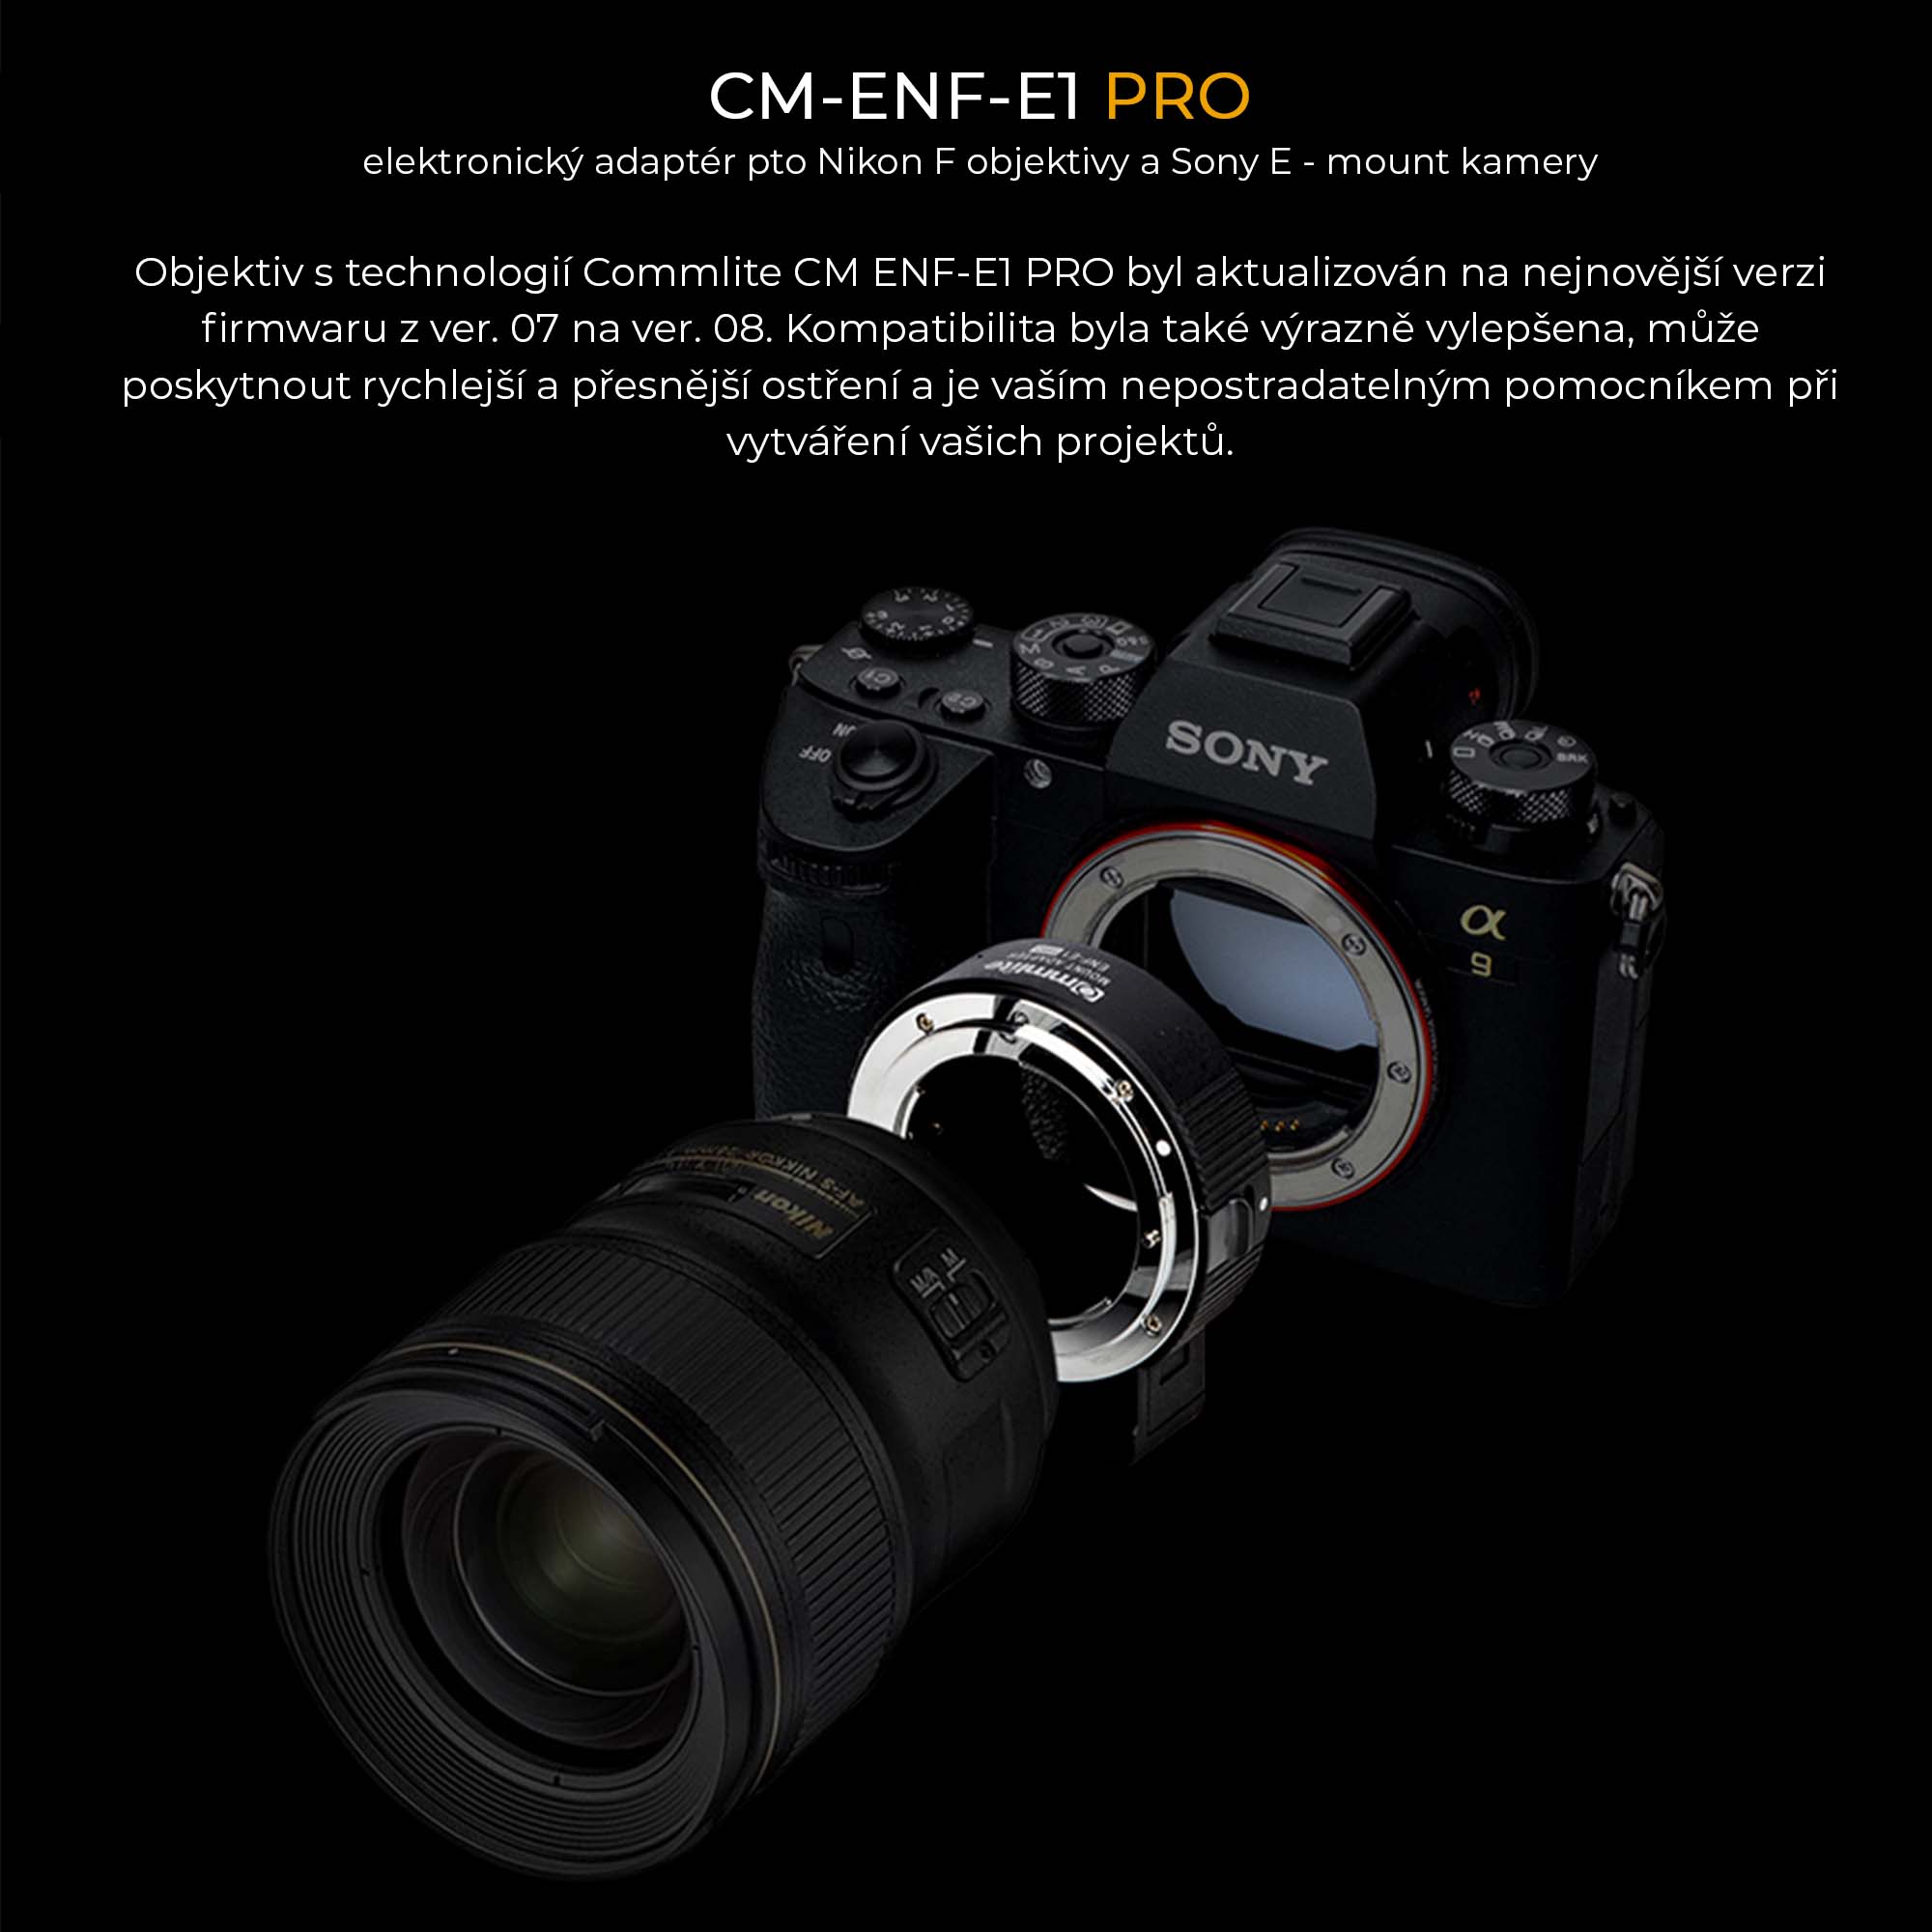 CM-ENF-E1 PRO